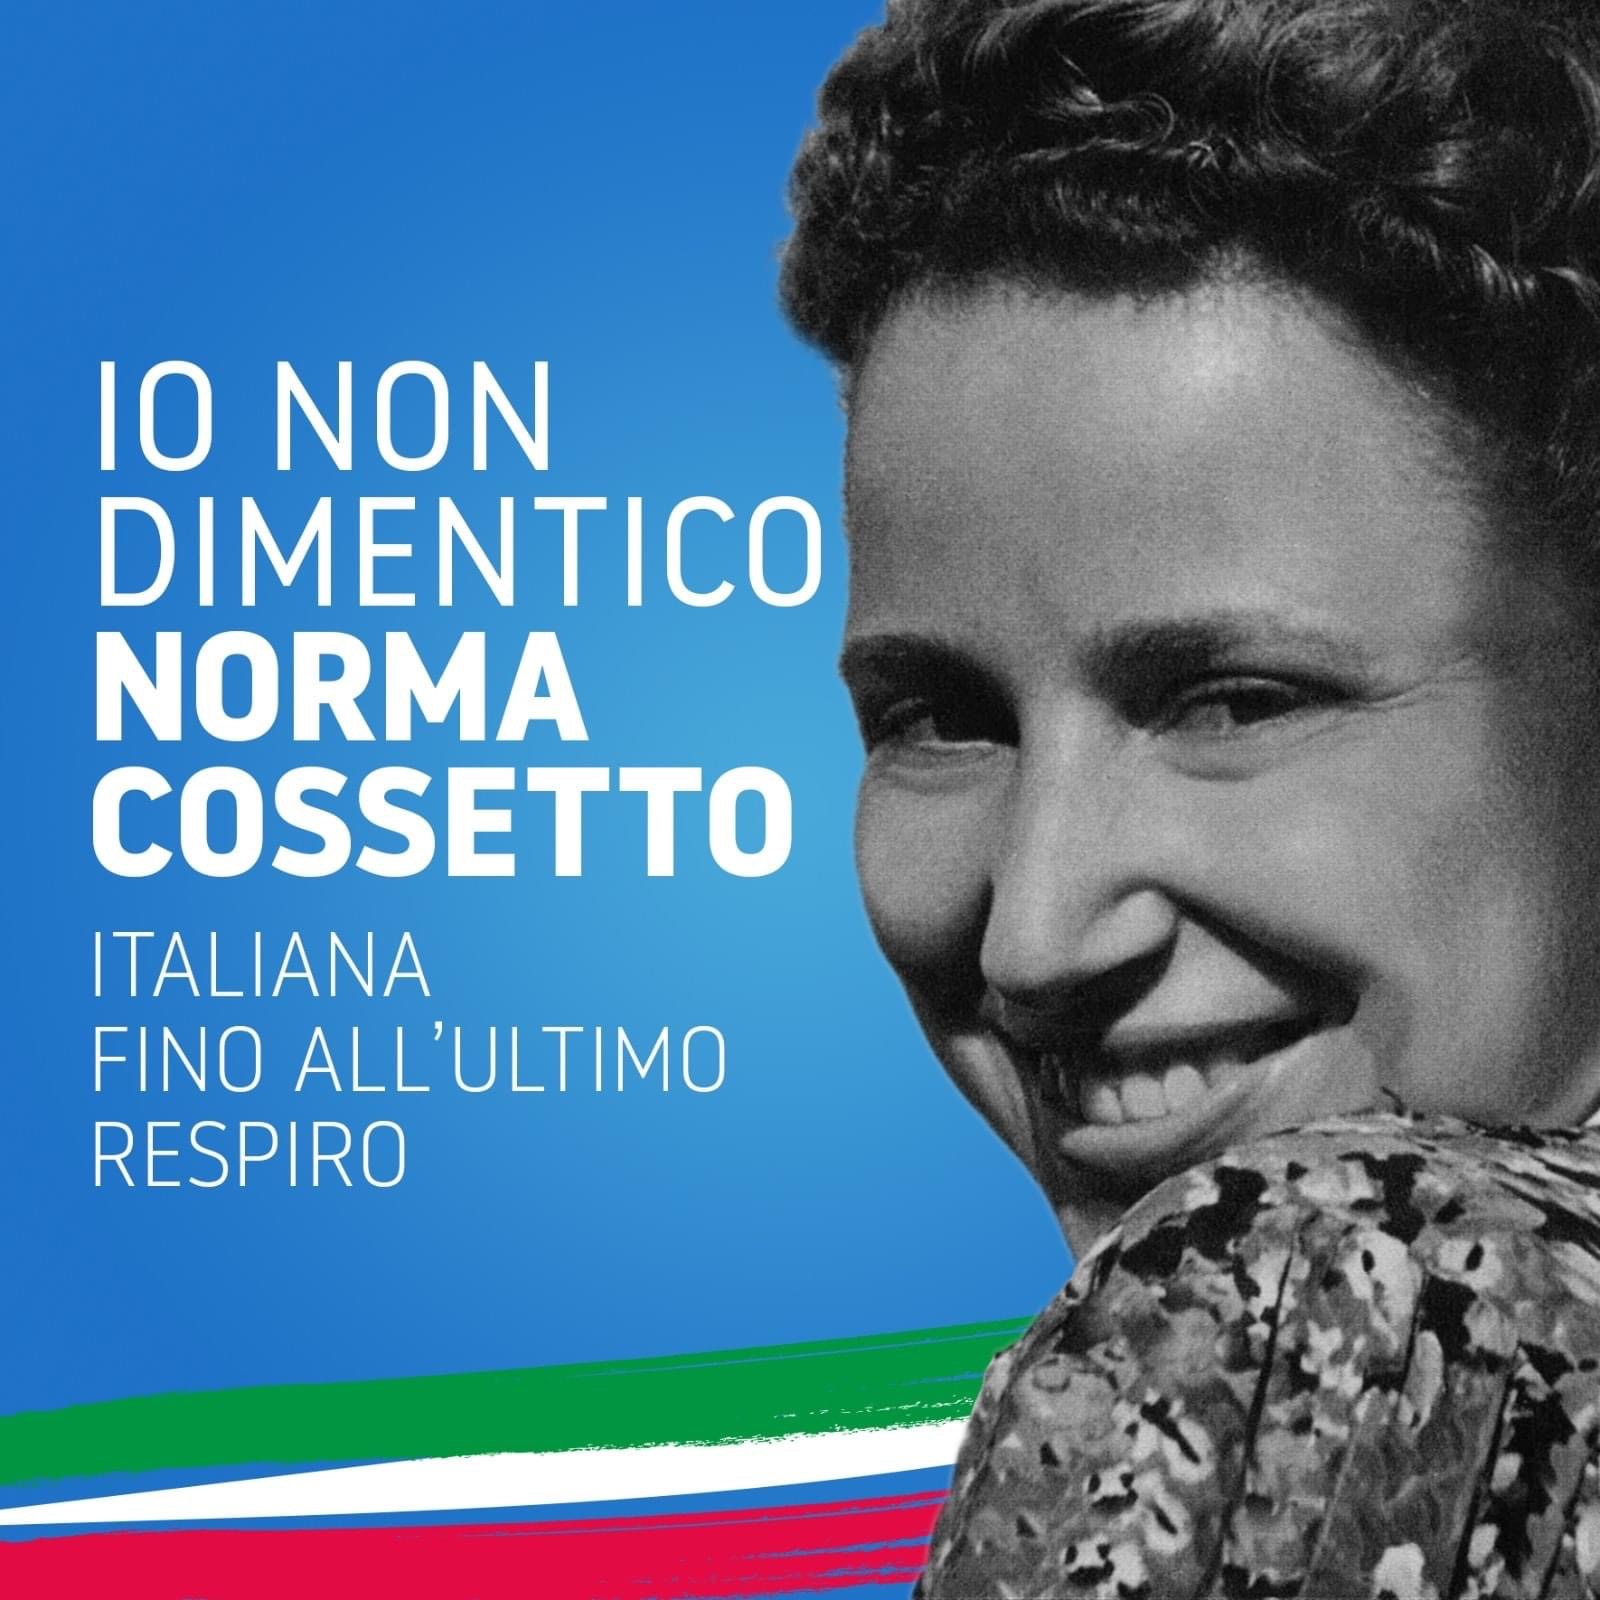 Norma Cossetto. A Bolzano: "Foibe propaganda fascista"